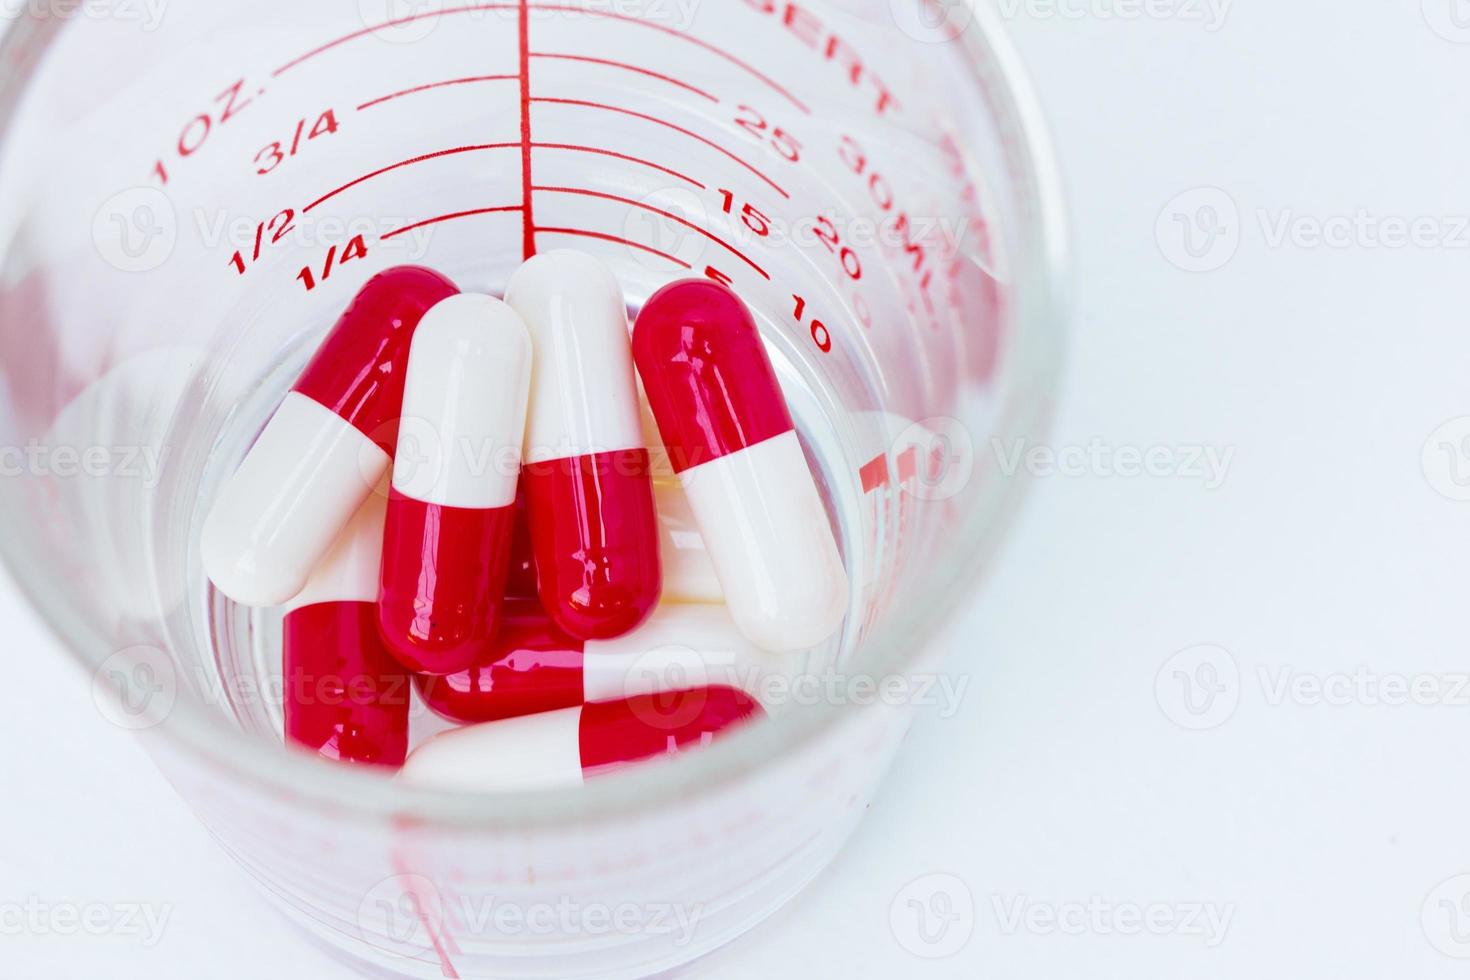 capsules rouges blanches dans une tasse de verre photo